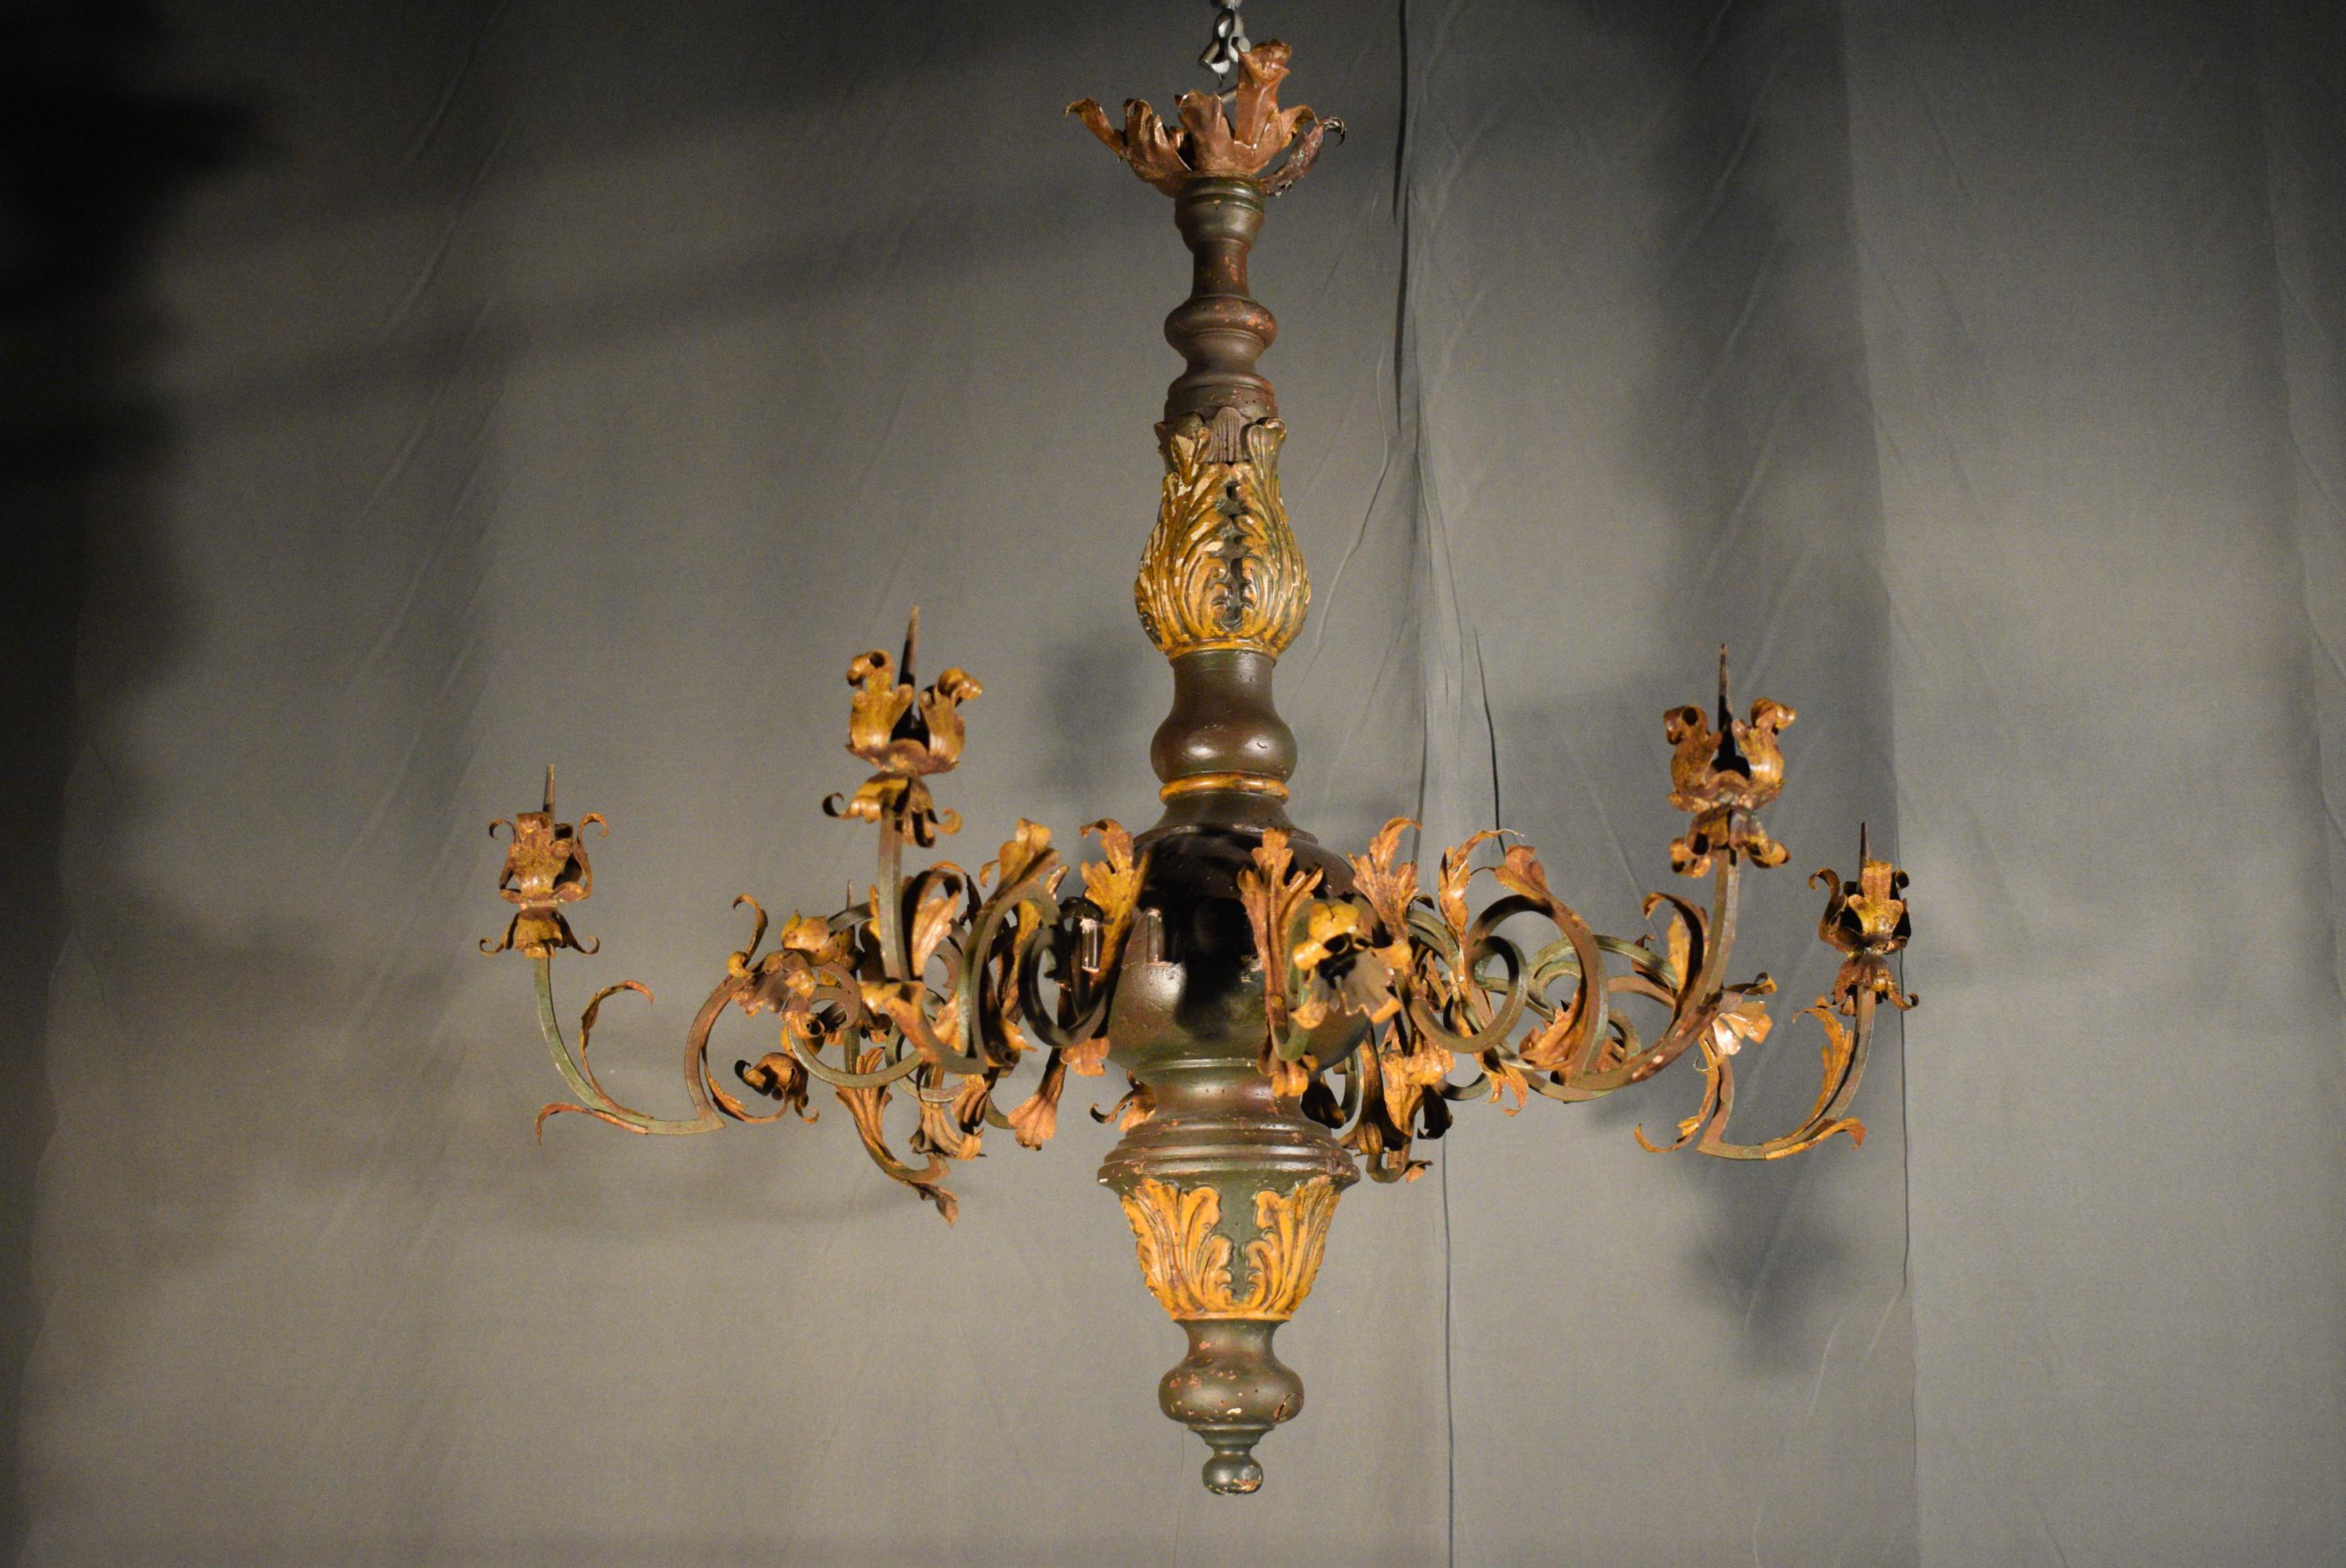 Un très beau lustre italien du 18ème siècle, destiné à l'origine à des bougies. Paire disponible en bois (partiellement doré), fer et bronze doré (verrière supérieure). Une trouvaille rare.
Dimensions : Hauteur 33